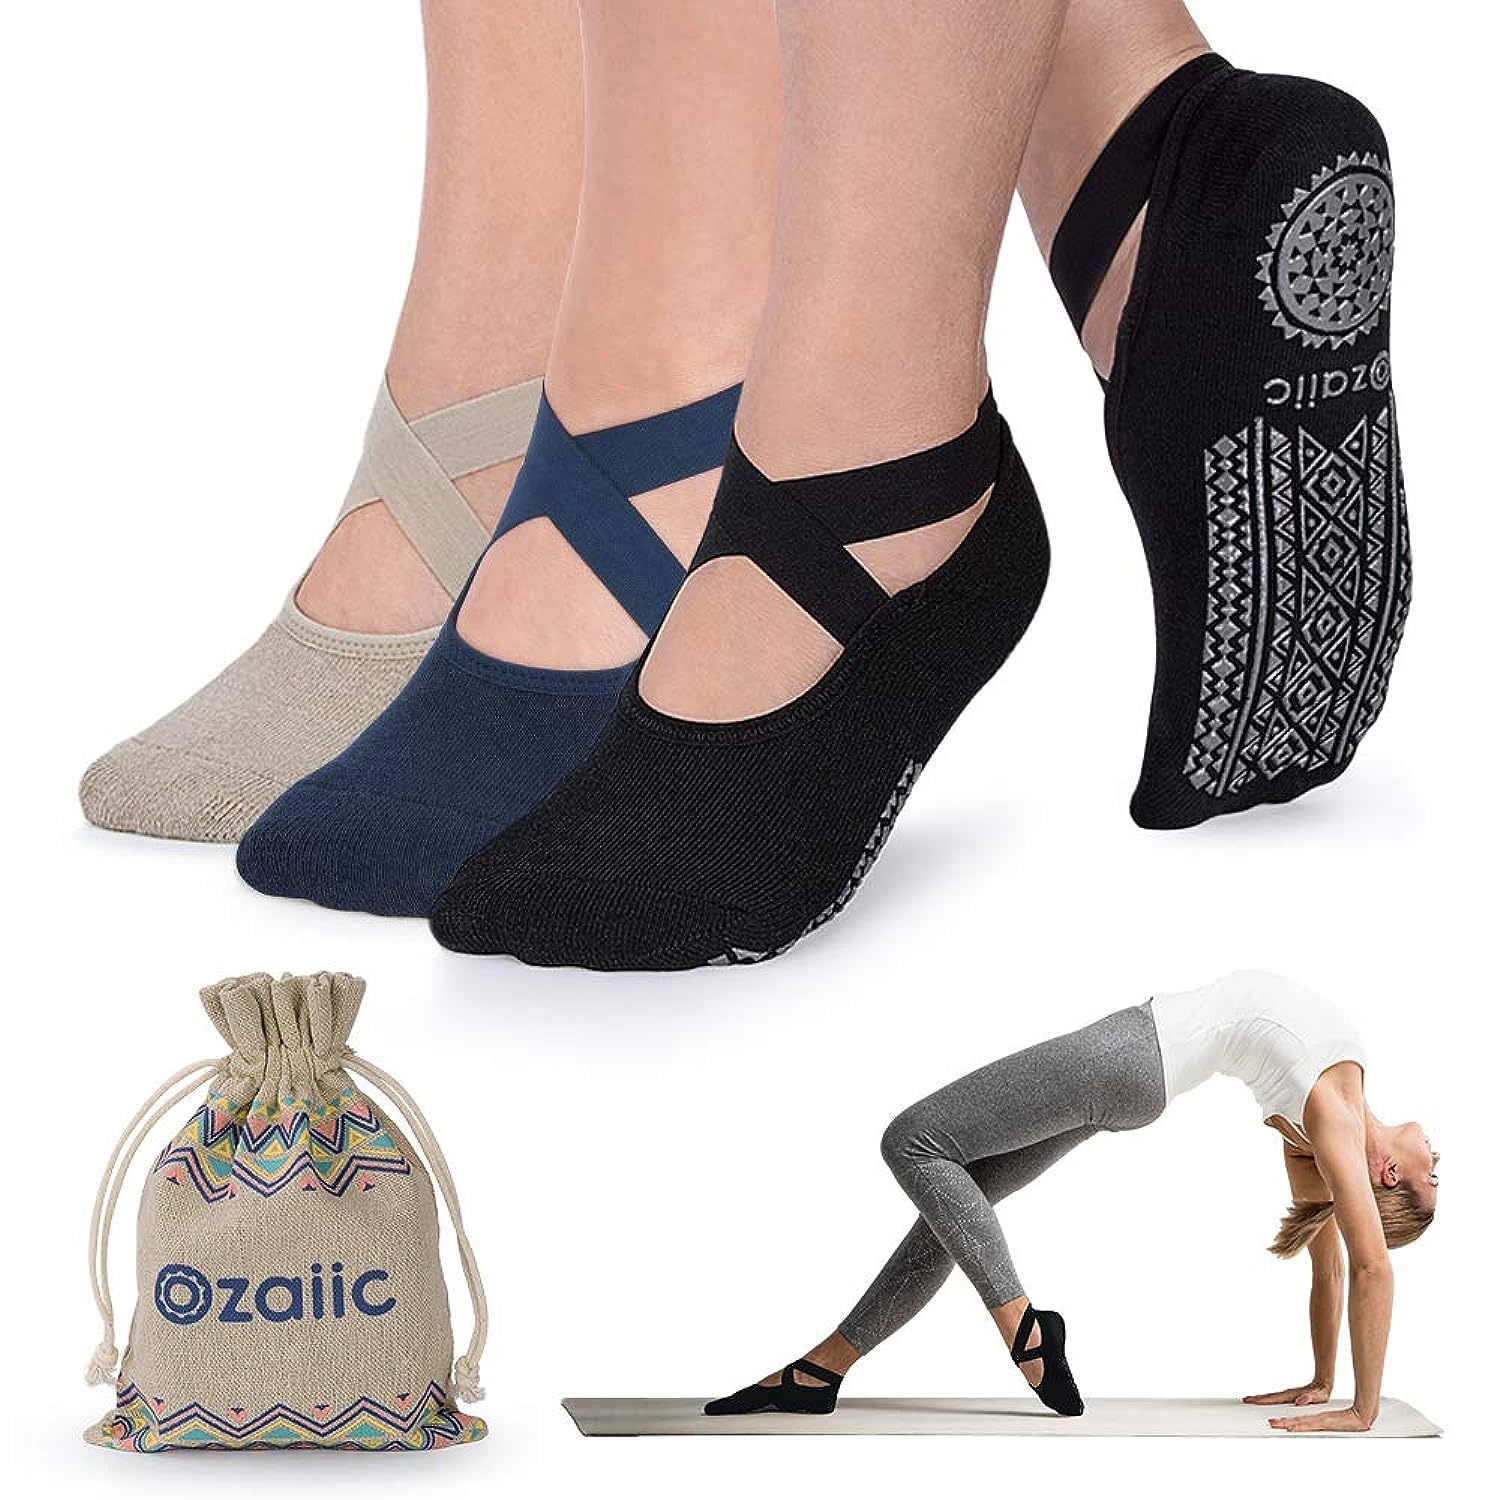 Primary image for Non Slip Socks For Yoga Pilates Barre Fitness Hospital Socks For Women (3 Pairs 